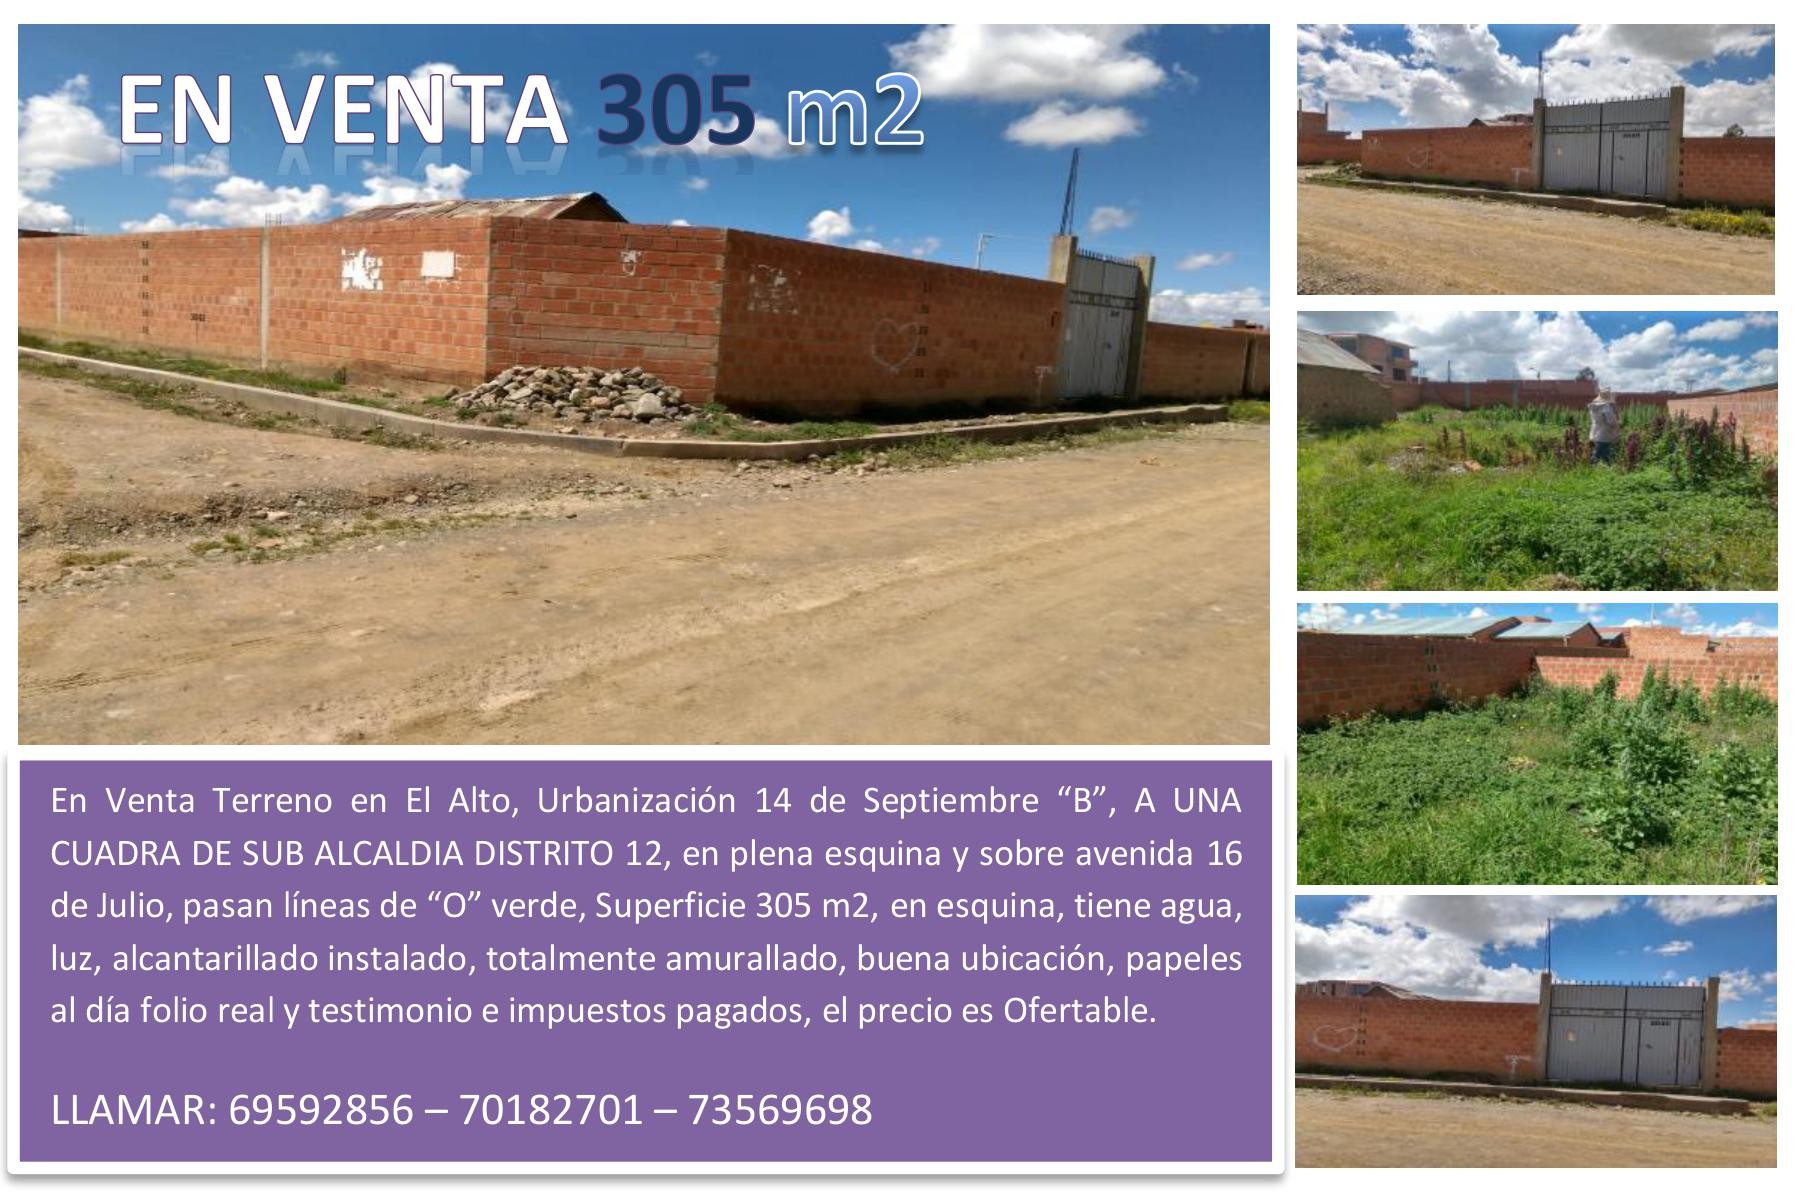 Terreno en VentaEn venta terreno en El Alto Urb. 14 de Septiembre Foto 4